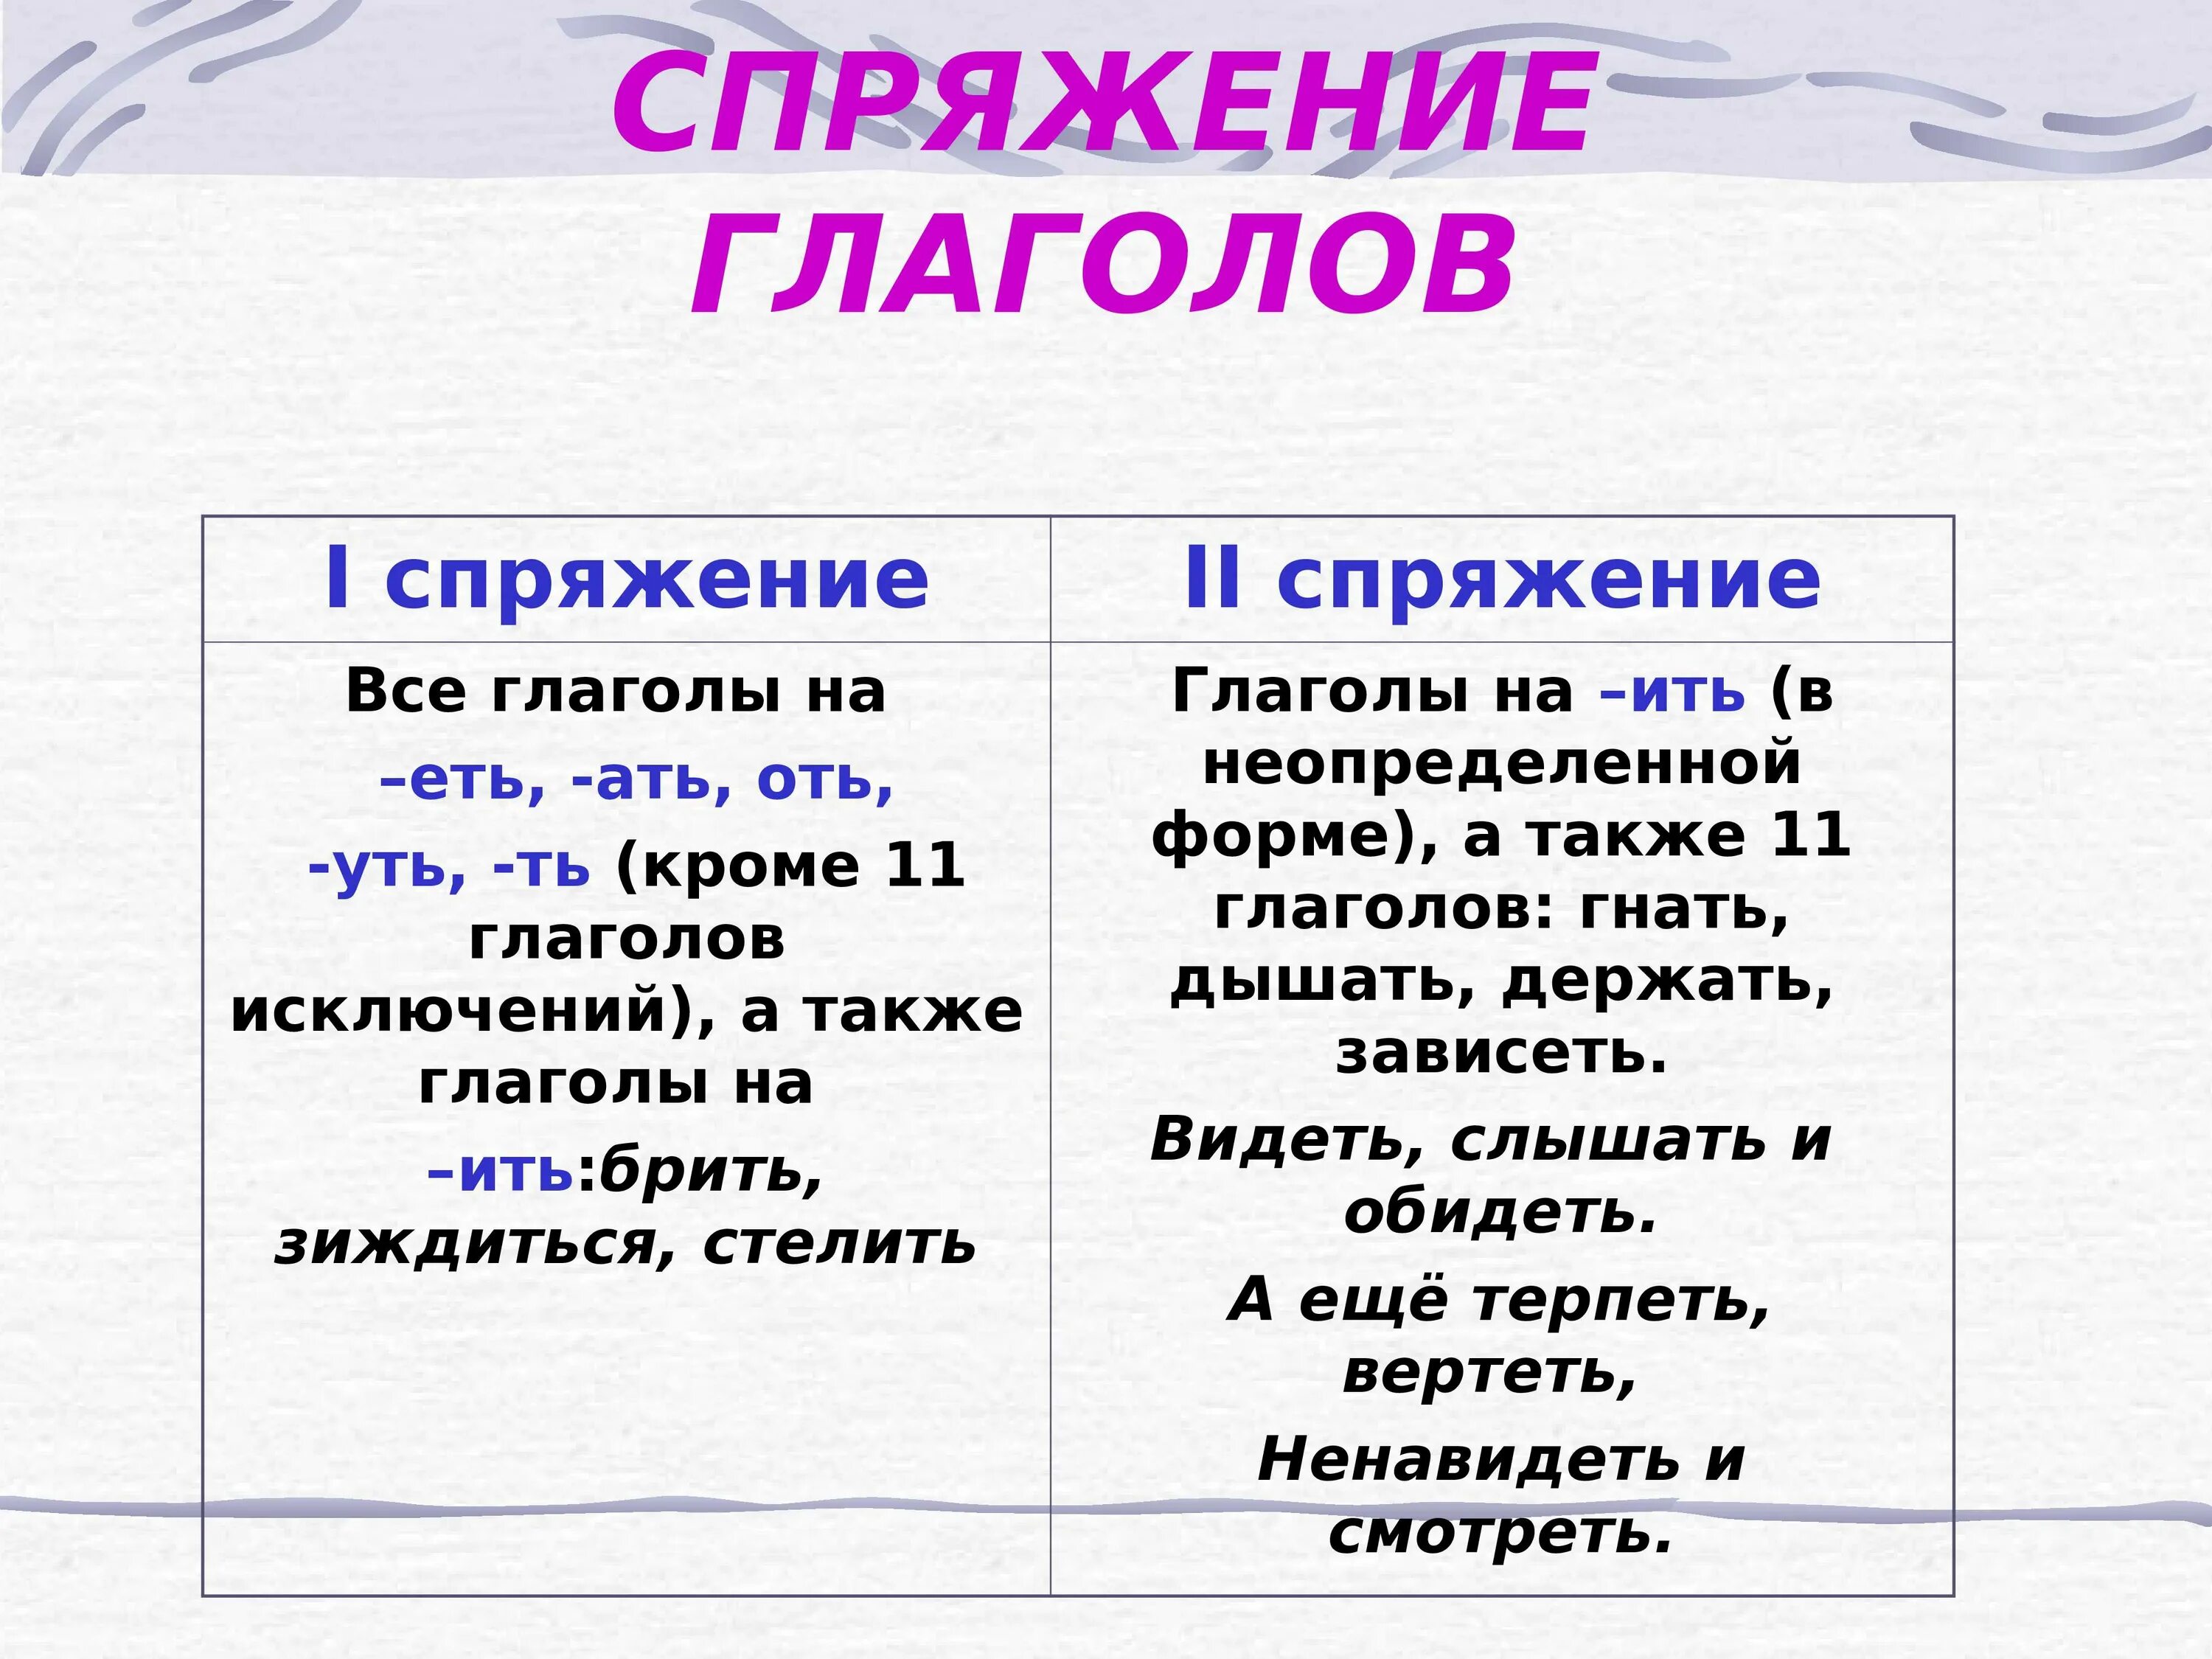 Радуемся какое спряжение глагола. Как понять спряжение глаголов в русском языке 4 класс таблица. Как понять спряжение глаголов 6 класс. Спряжение глаголов правило таблица. Как понять спряжение глаголов в русском языке 4 класс.